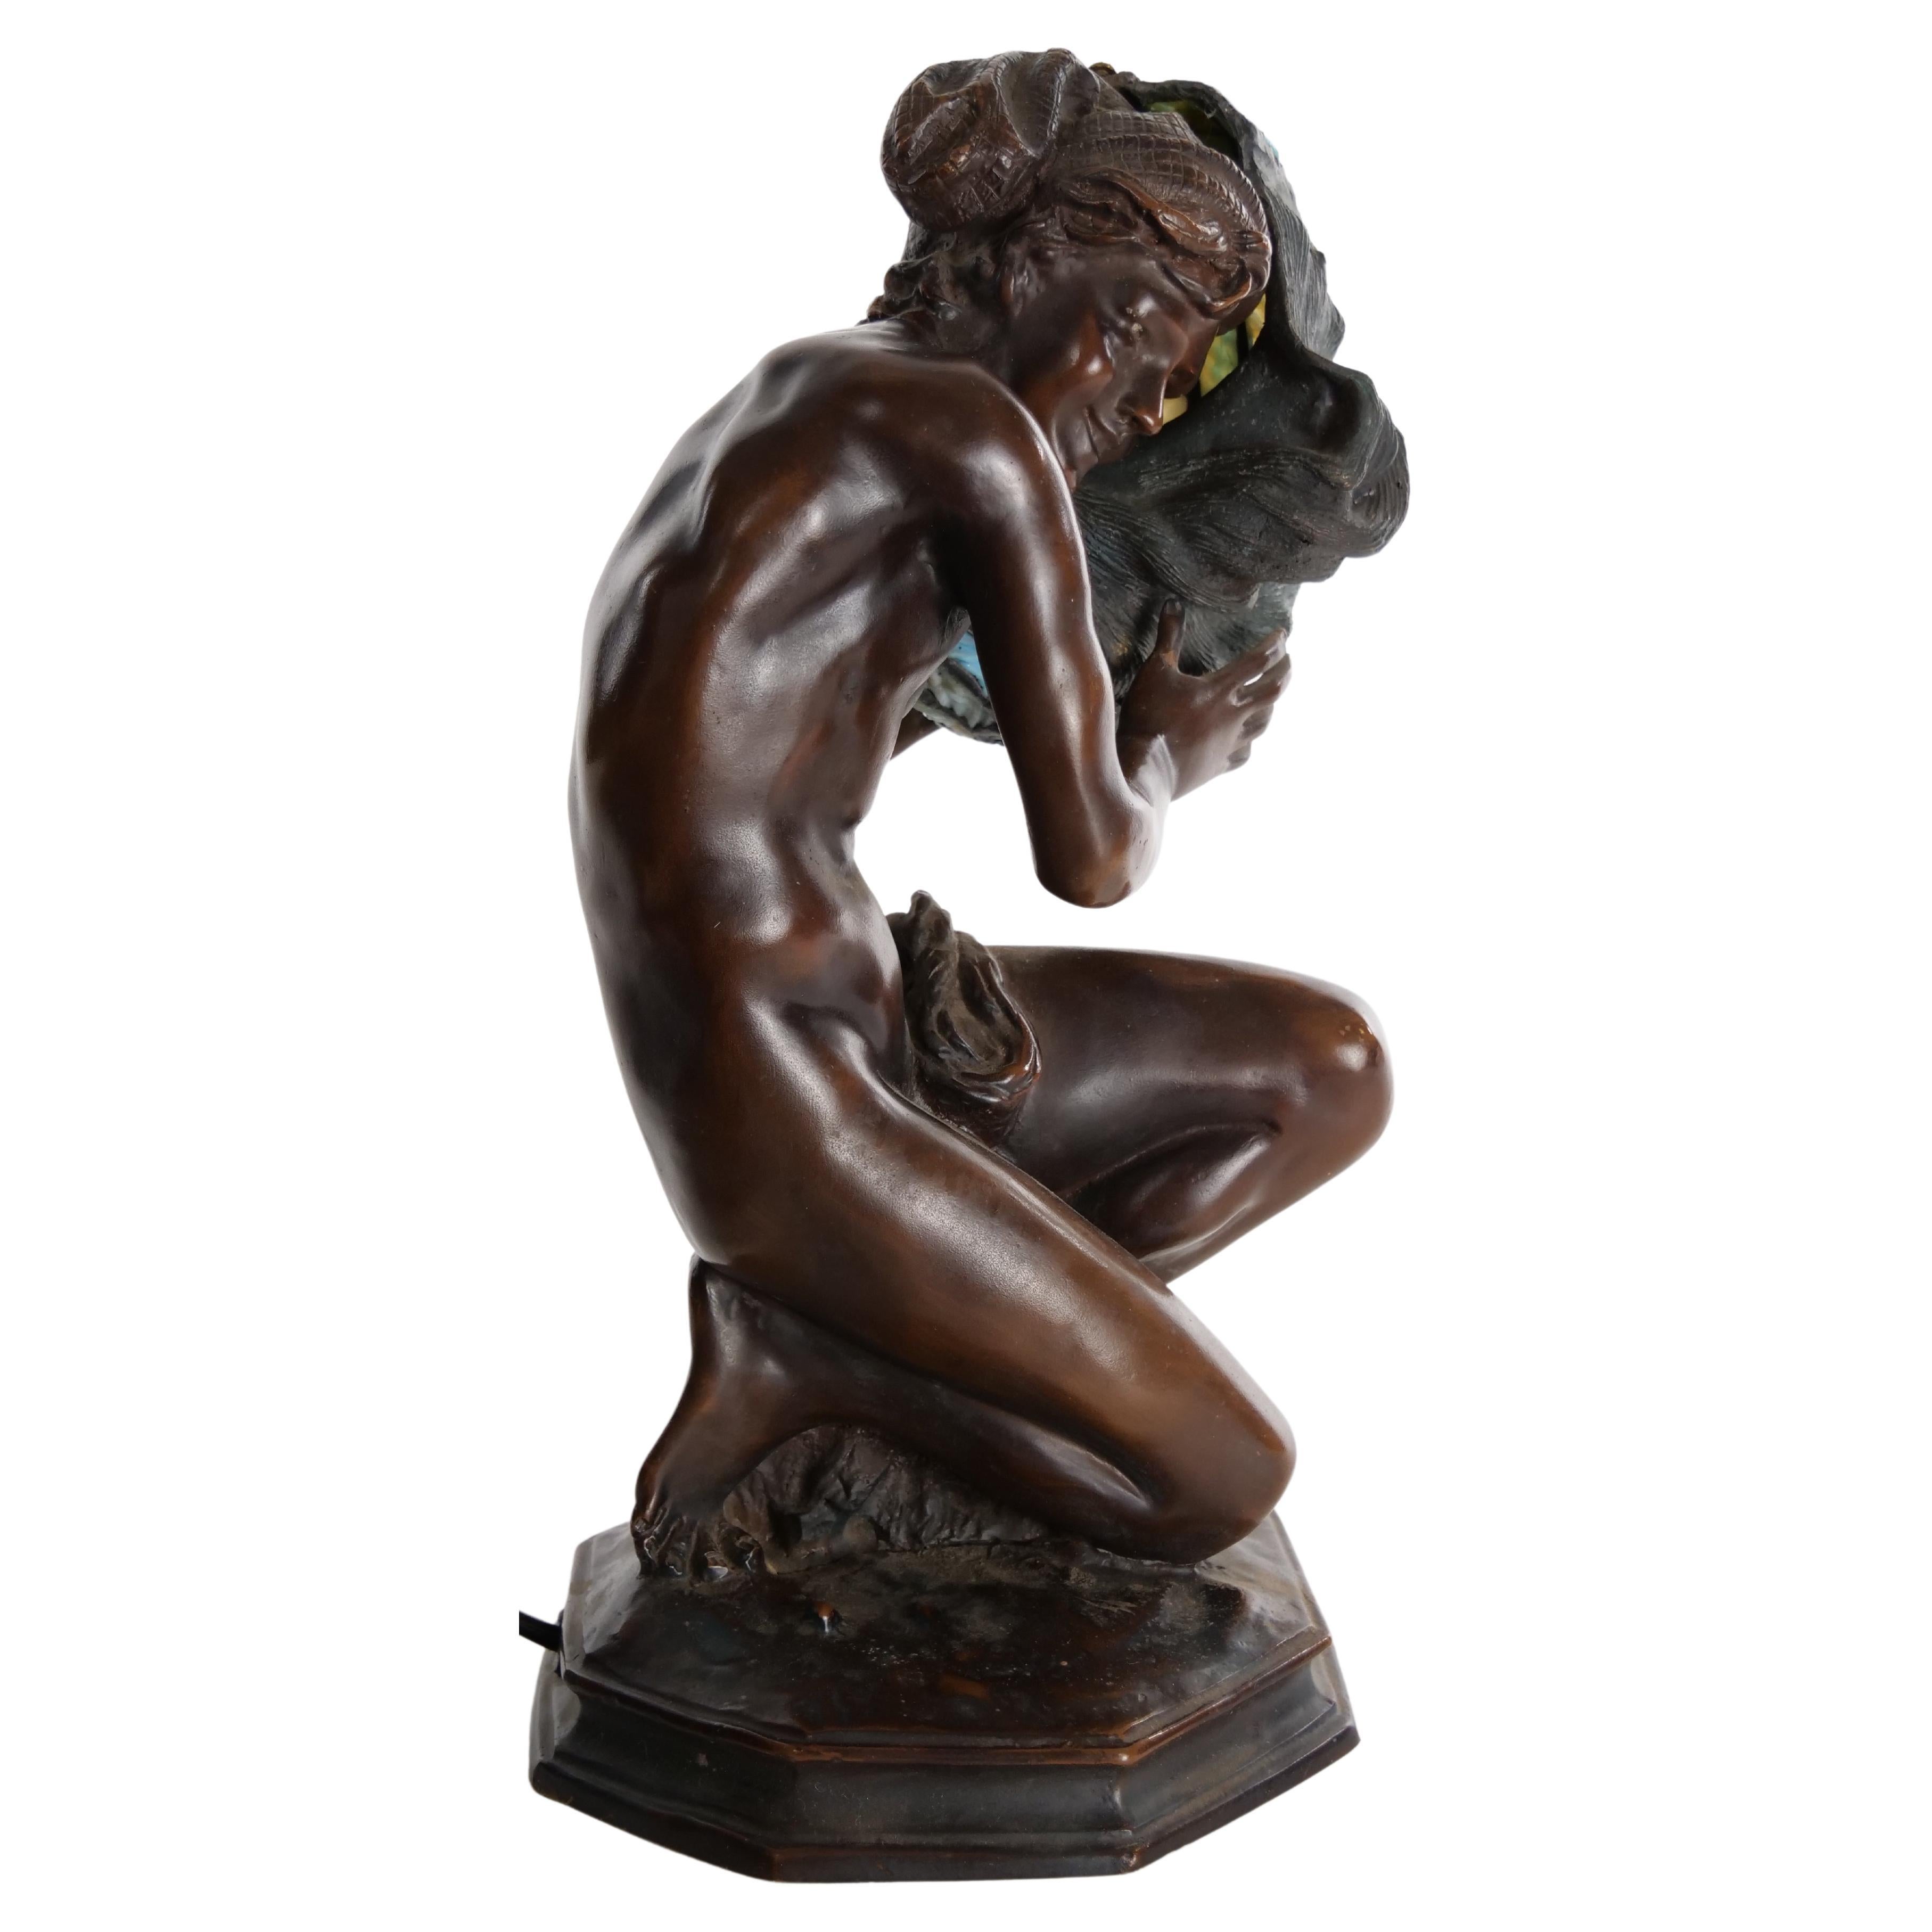 Ende des 19. Jh. Schön gearbeitete Bronze-Tischlampe in Form einer knienden Frau, die einen bleiverglasten Schirm in Form einer Muschel hält. Die Lampe ist in gutem Zustand. Leichte alters- und gebrauchsbedingte Abnutzung. Es misst 15 Zoll hoch X